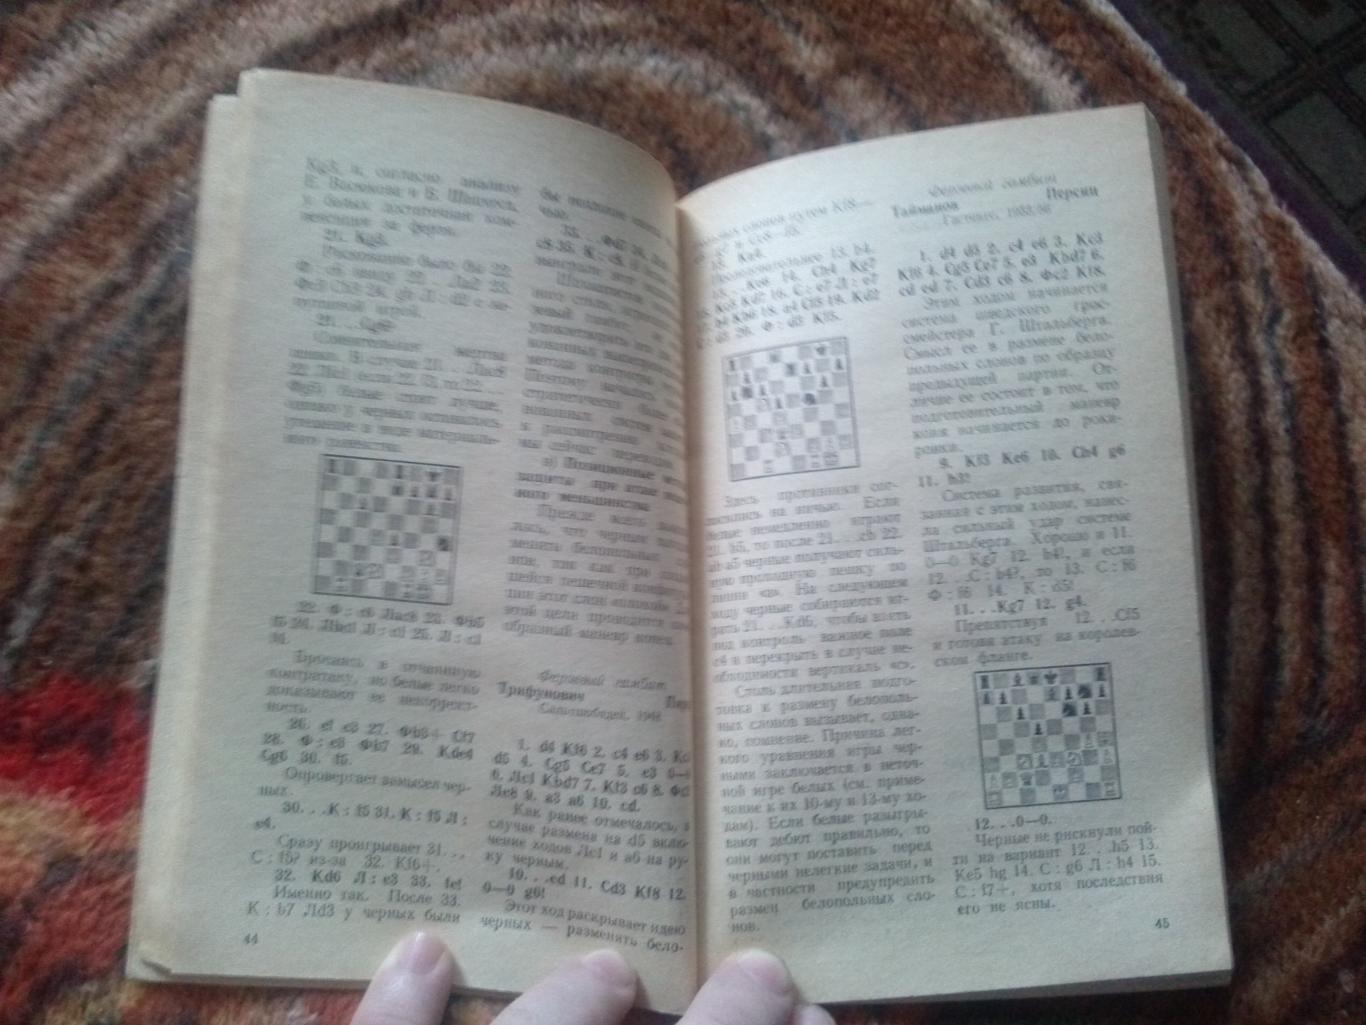 Шахматы : Б.А. Злотник -Типовые позиции миттельшпиля1986 г. ФиС (Спорт) 7